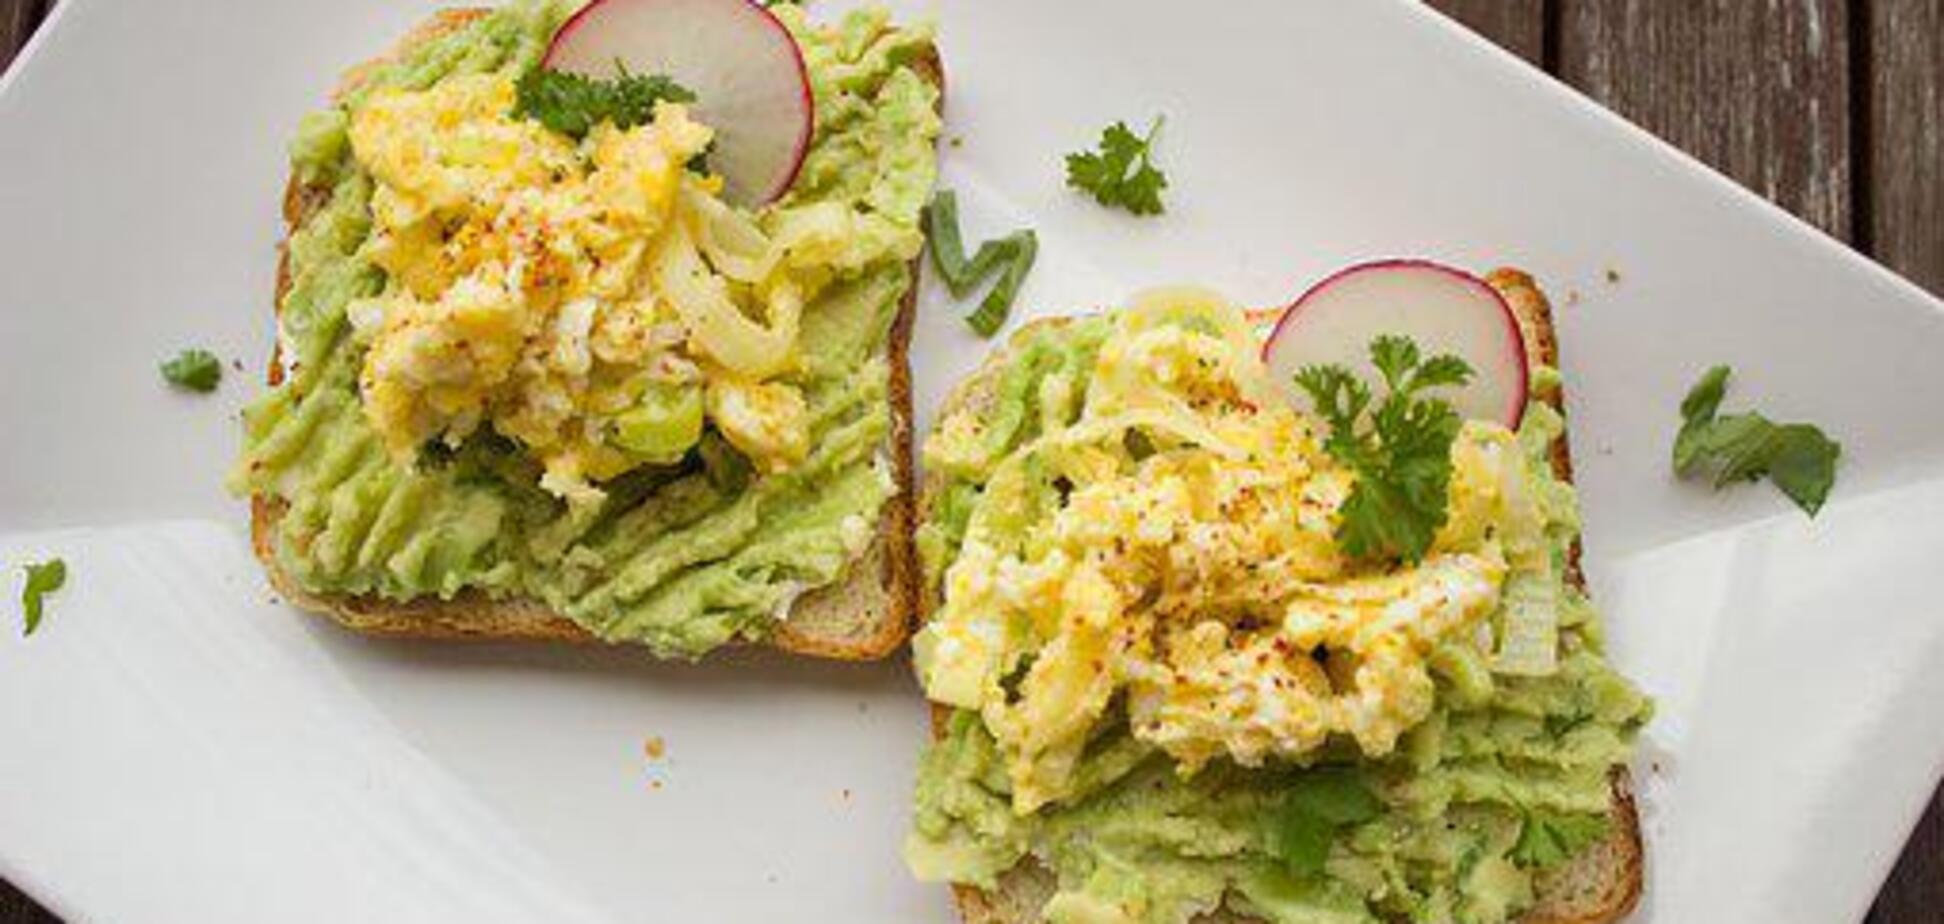 Намазка из авокадо на хлеб, тосты и гренки: 2 самых популярных рецепта